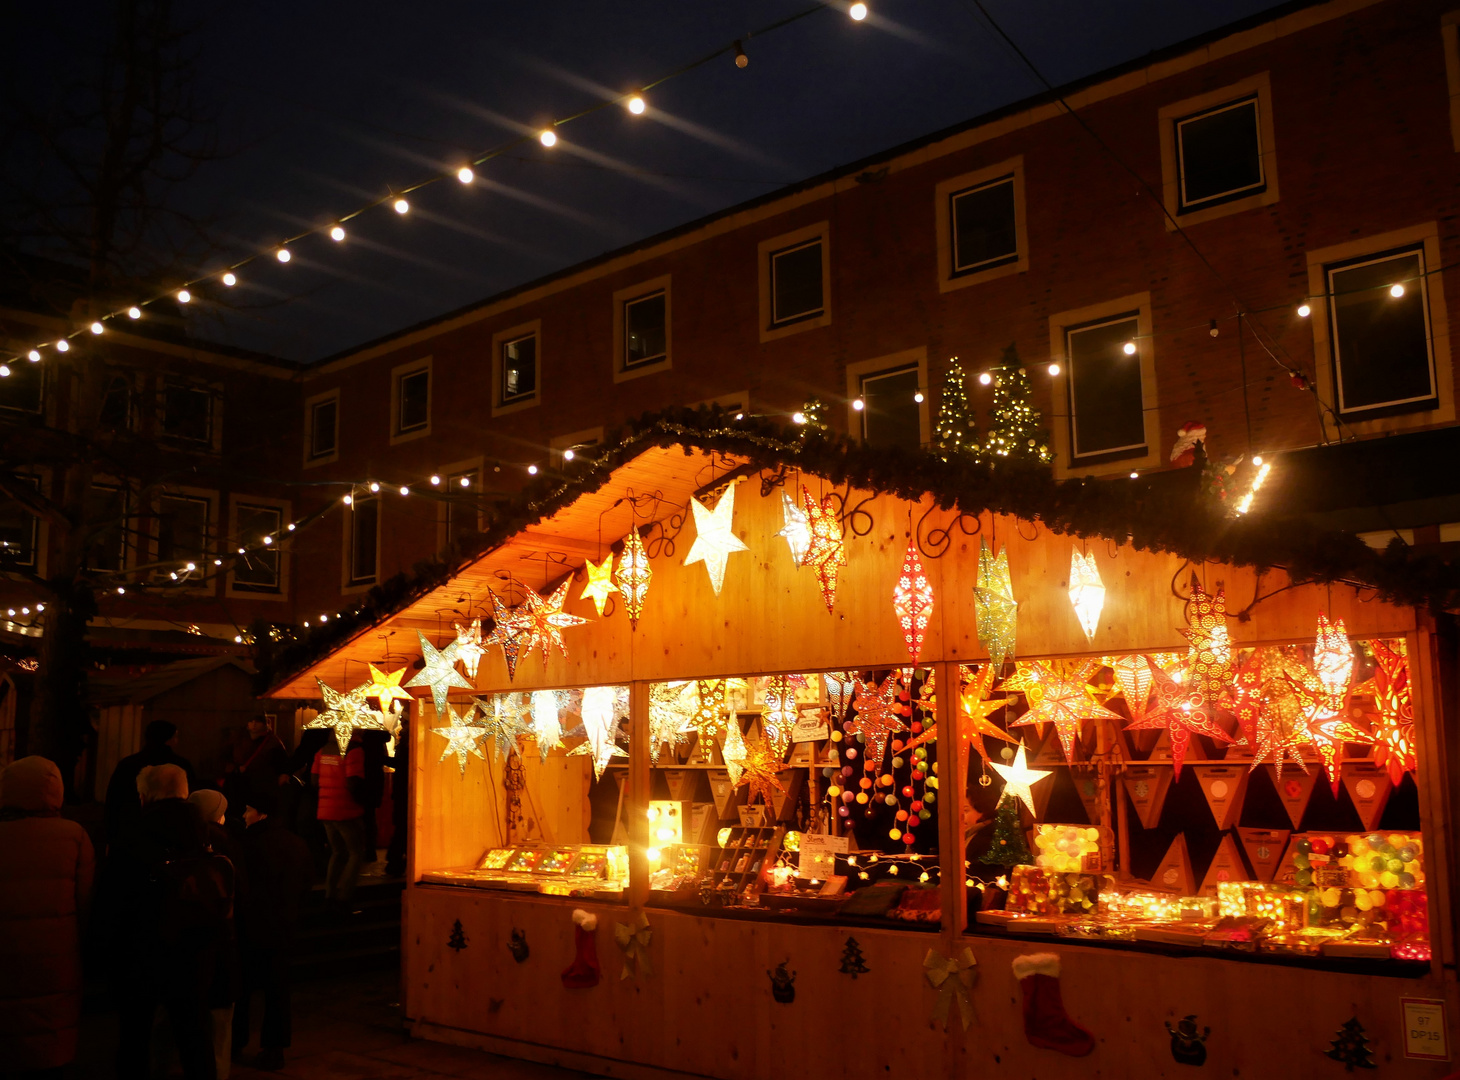 Weihnachtsmarktstand auf dem Rathausinnenhof in Münster